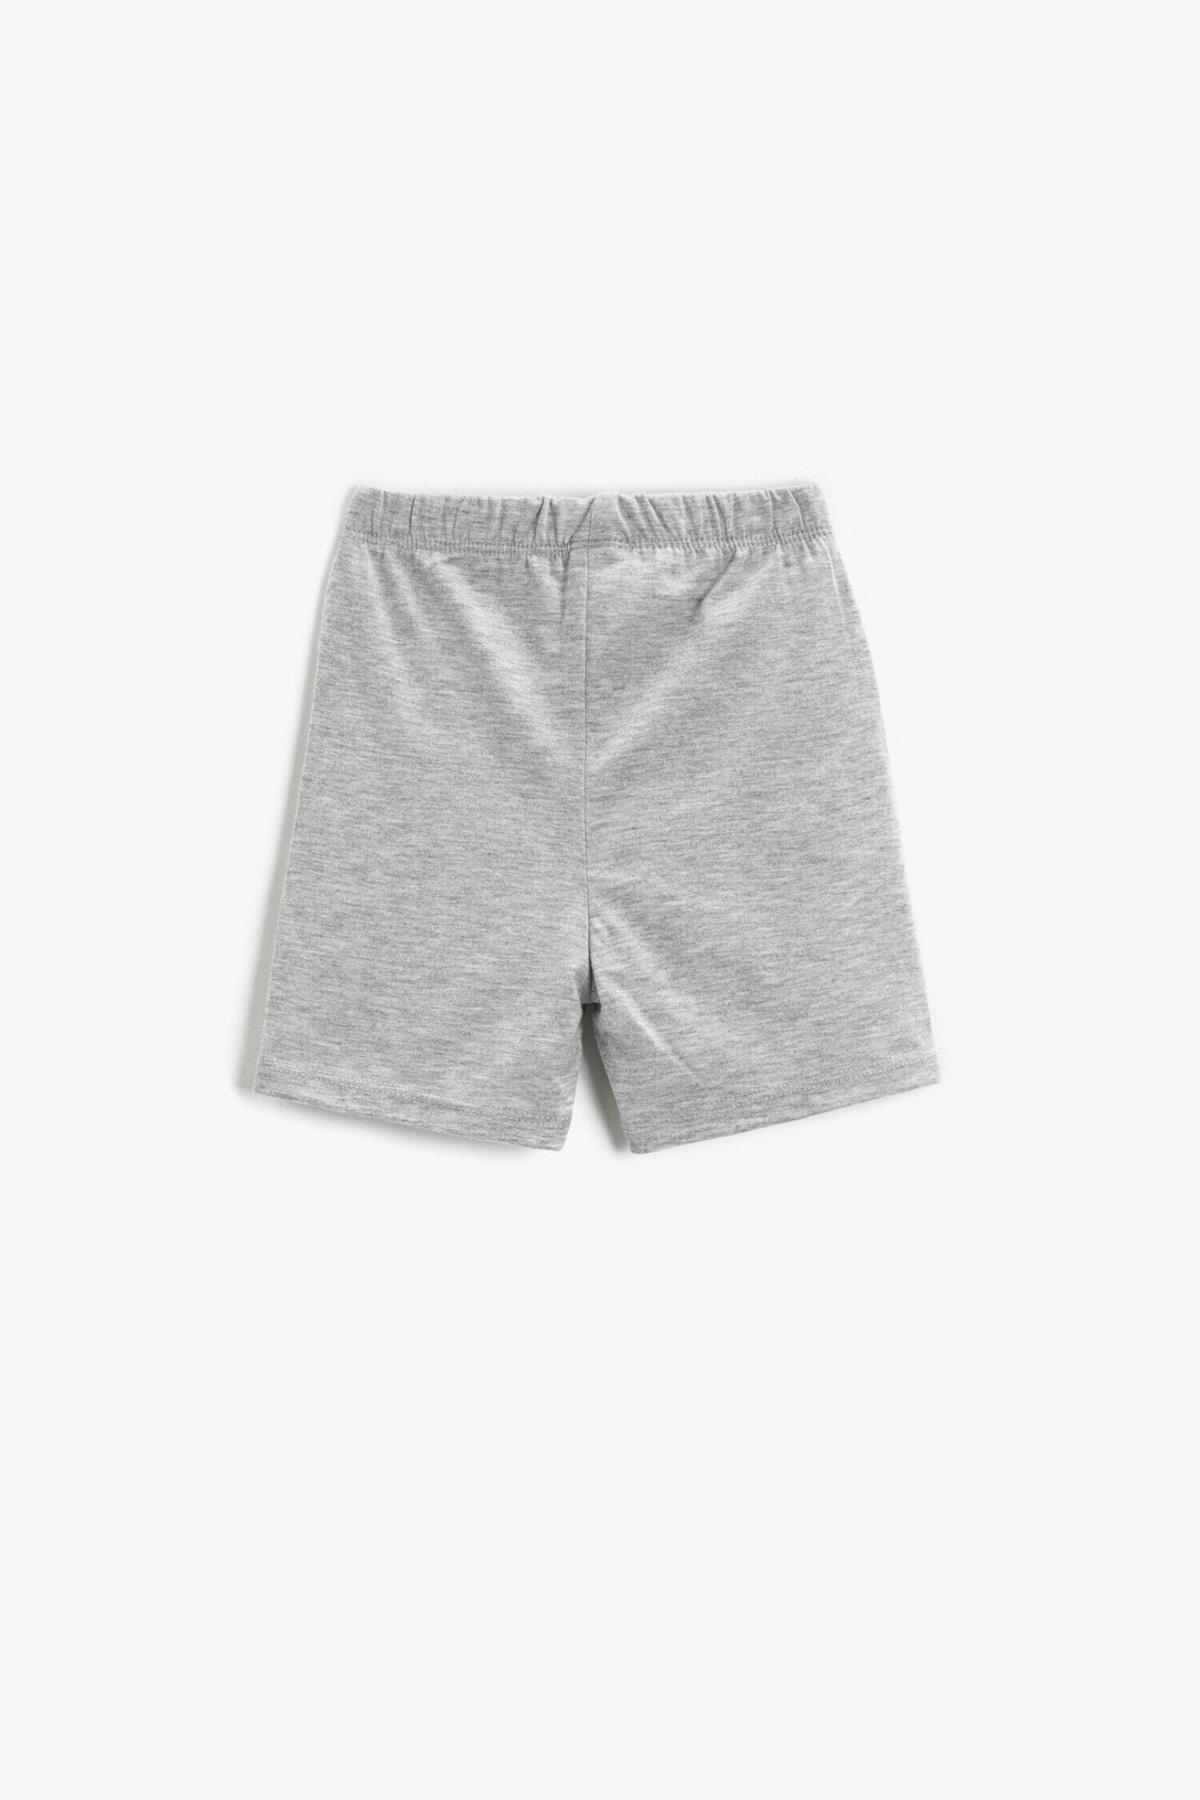 Koton - Grey Printed Elastic Waist Shorts